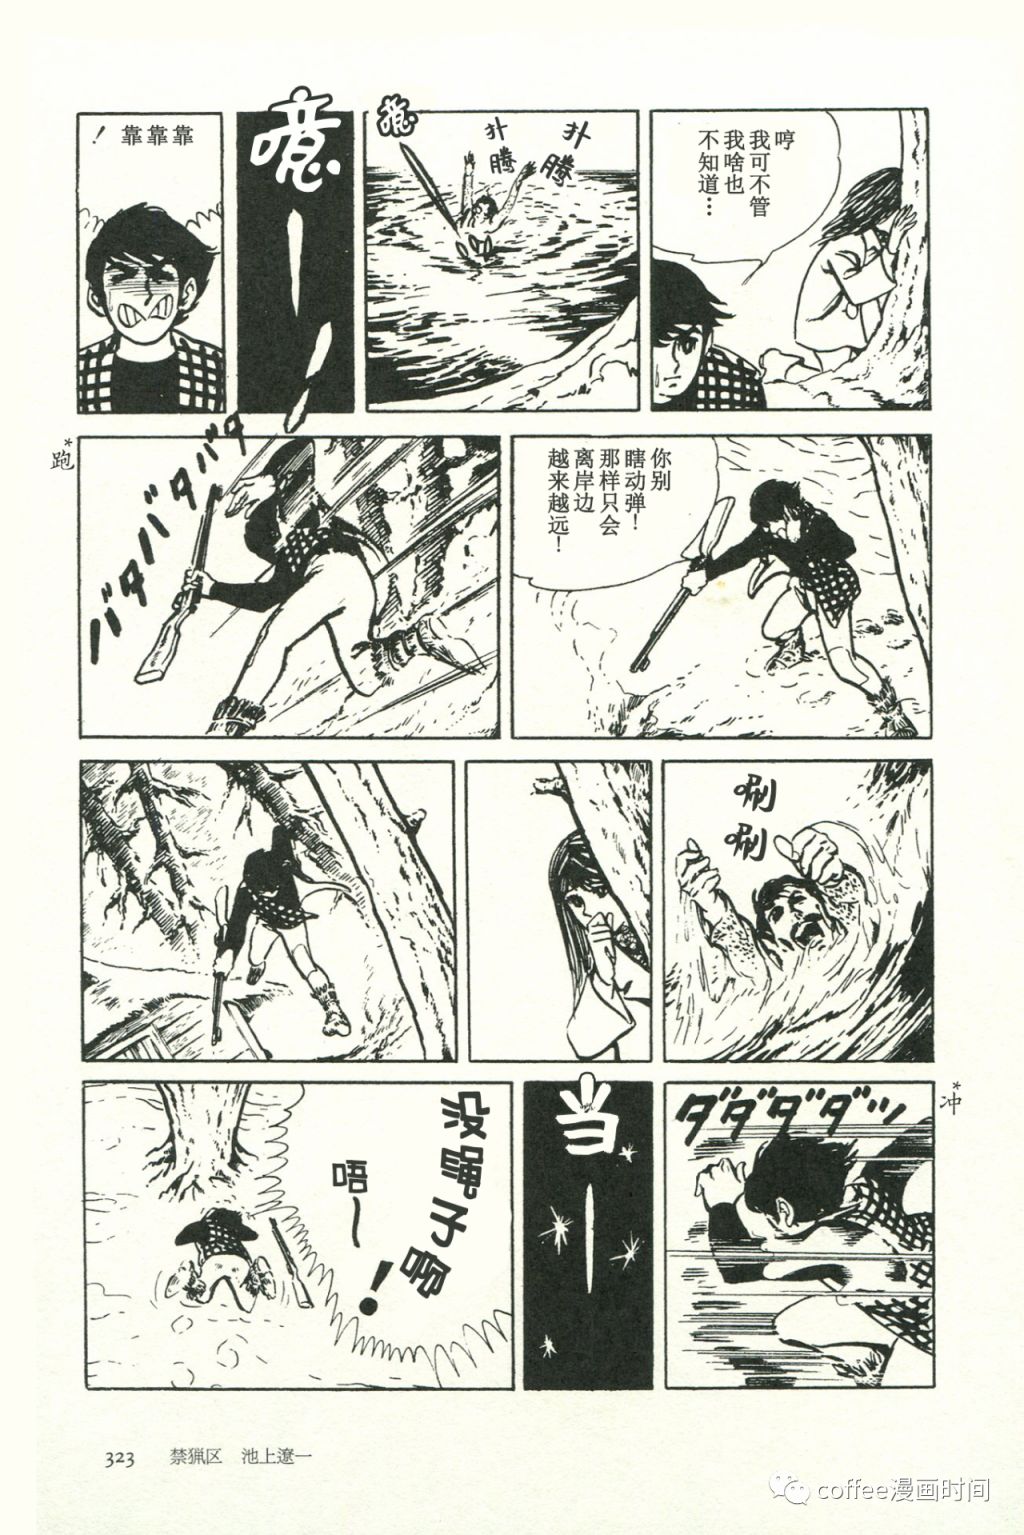 日本短篇漫畫傑作集 - 池上遼一《禁獵區》 - 1